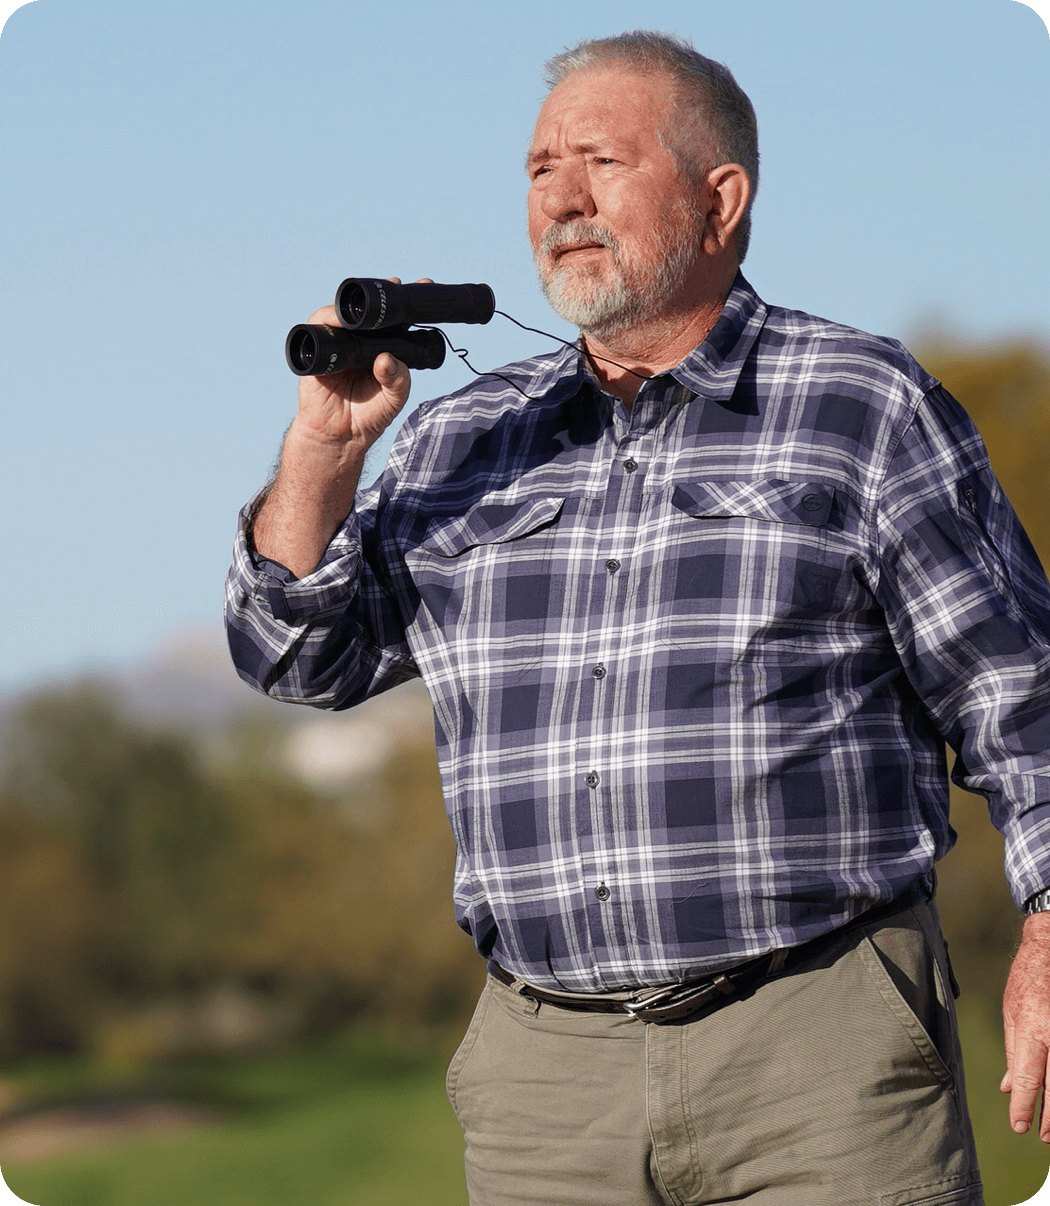 Acthar Gel patient: Gary outdoors with binoculars